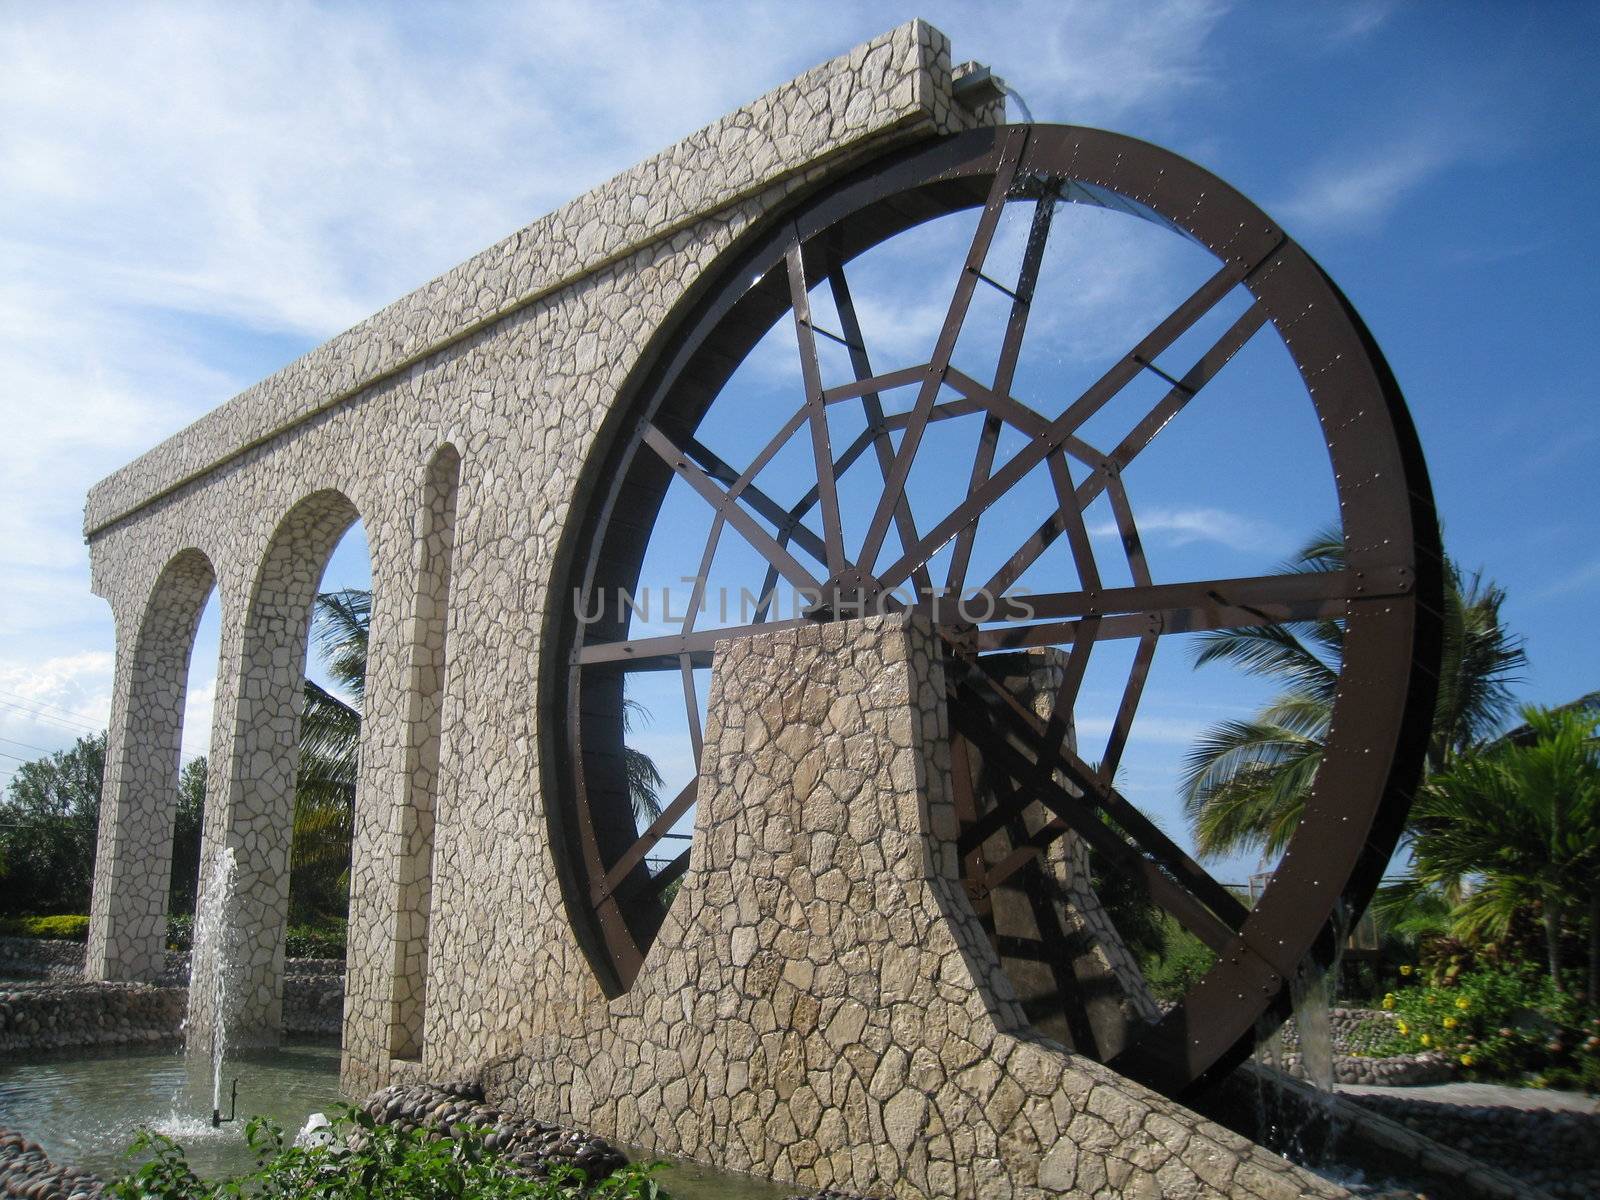 Landmark in Jamaica by sainaniritu